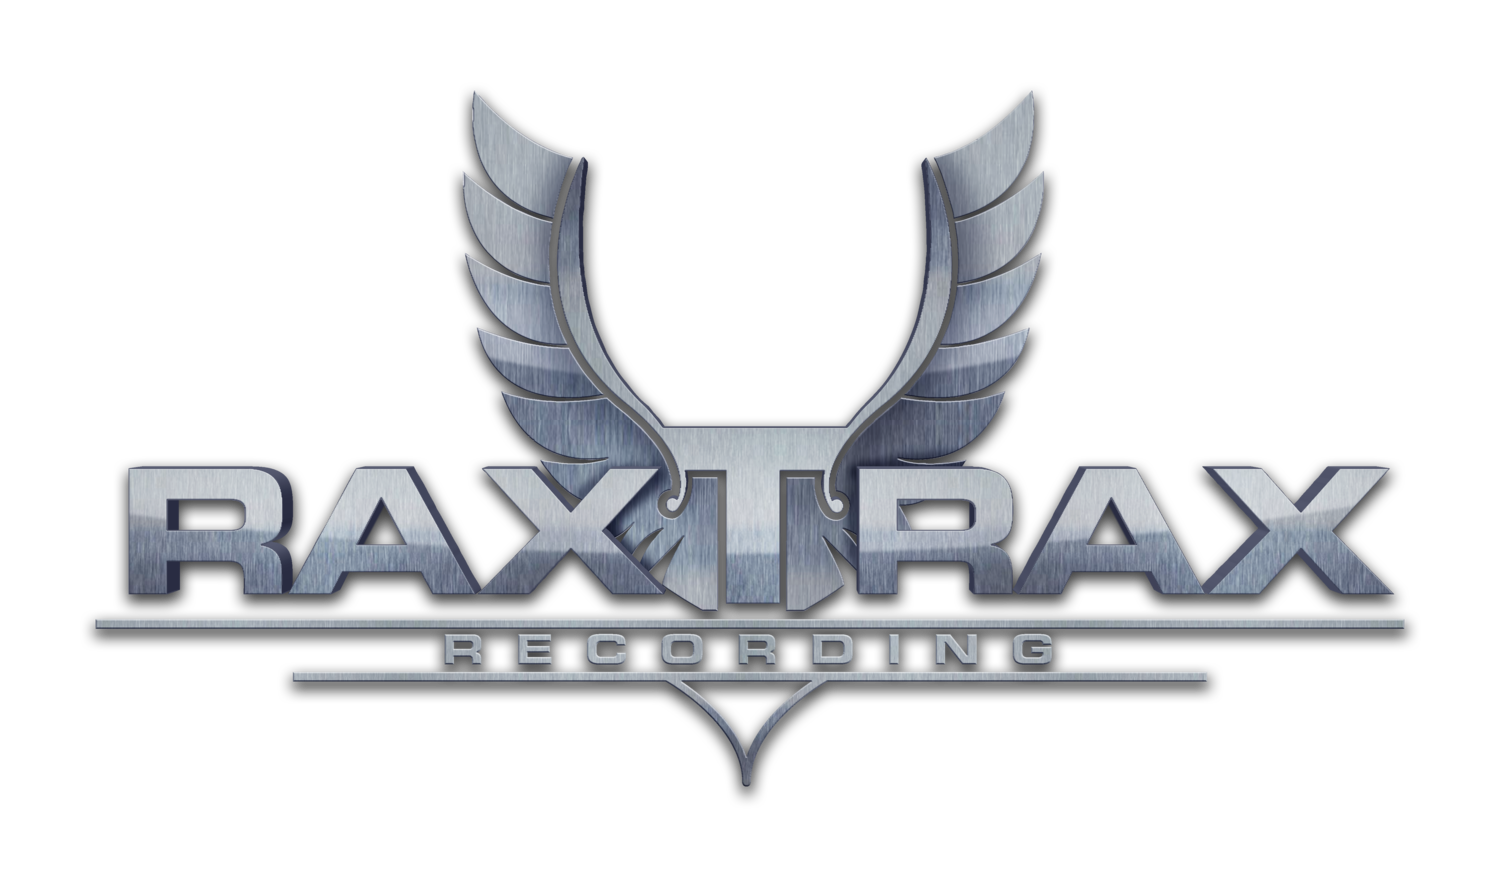 Rax Trax Recording